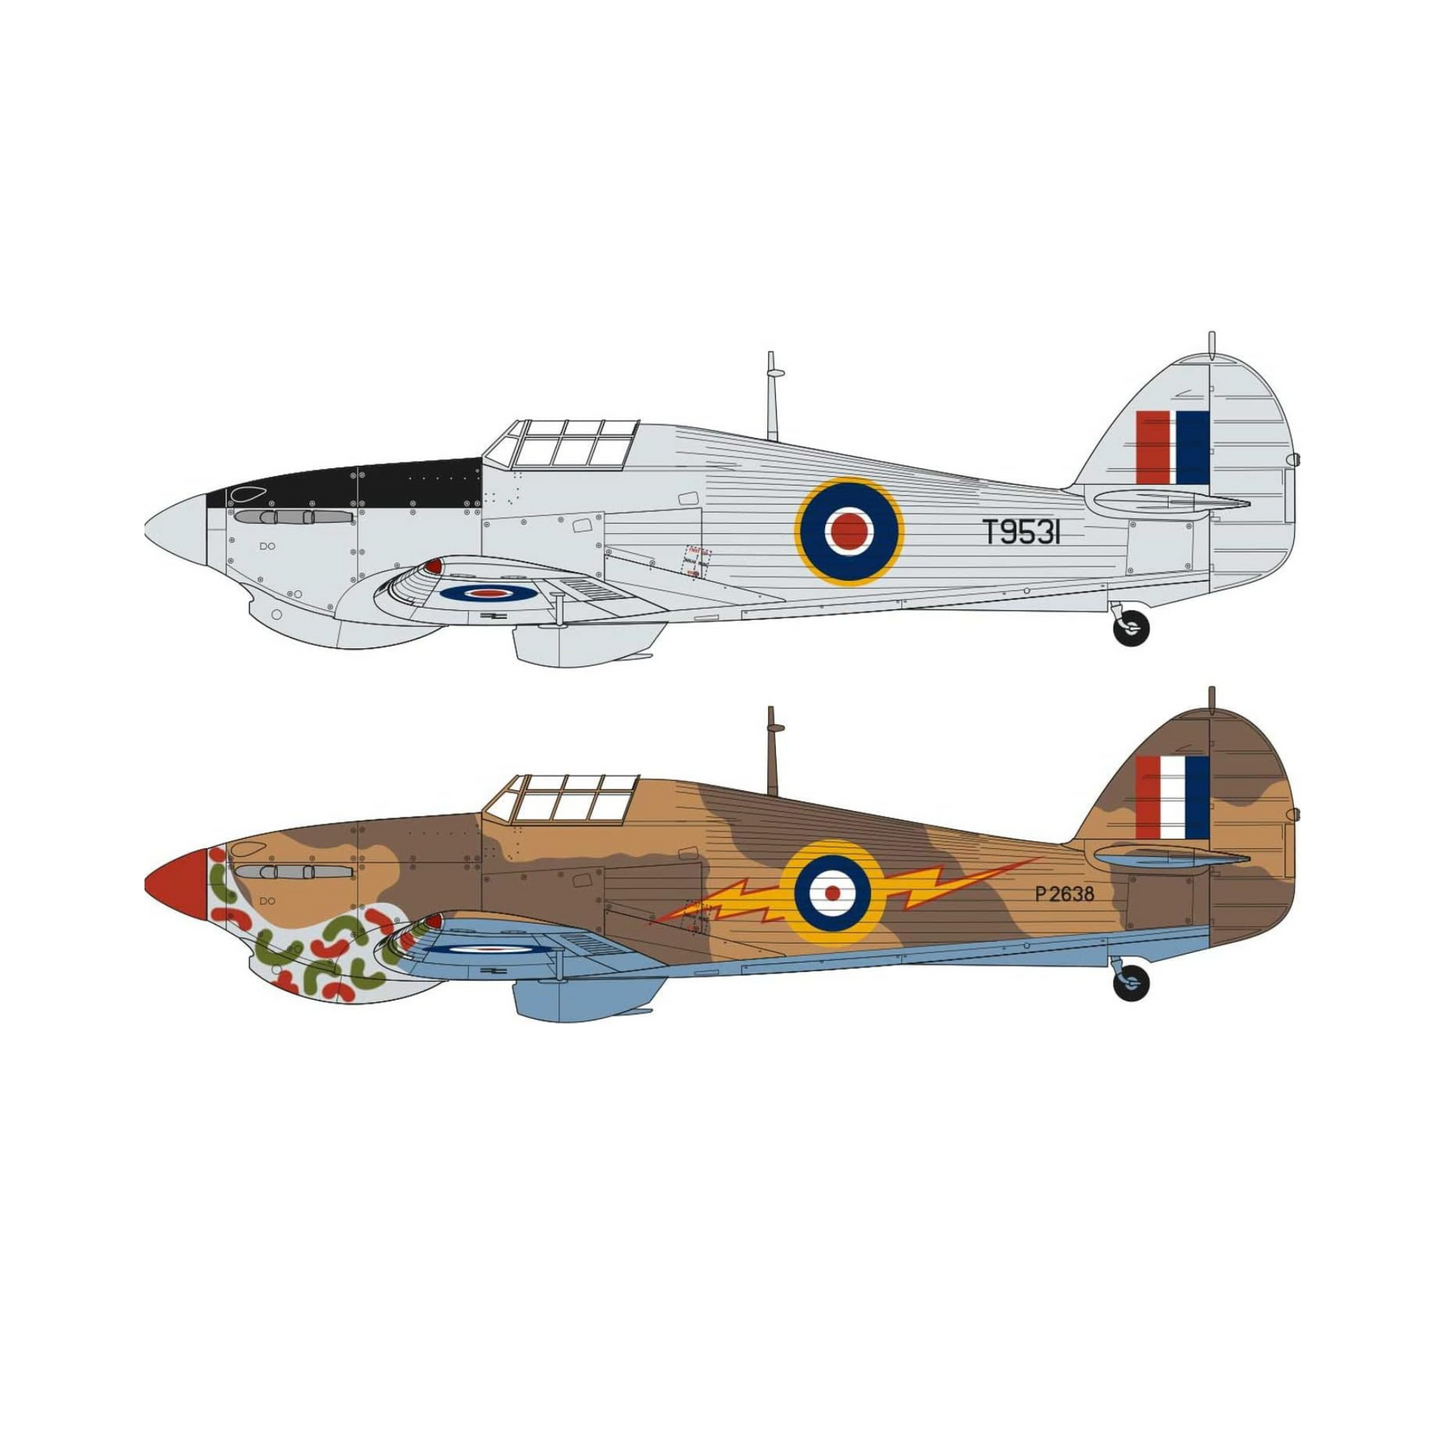 Airfix Aircraft Hawker Hurricane Mk.I Tropical